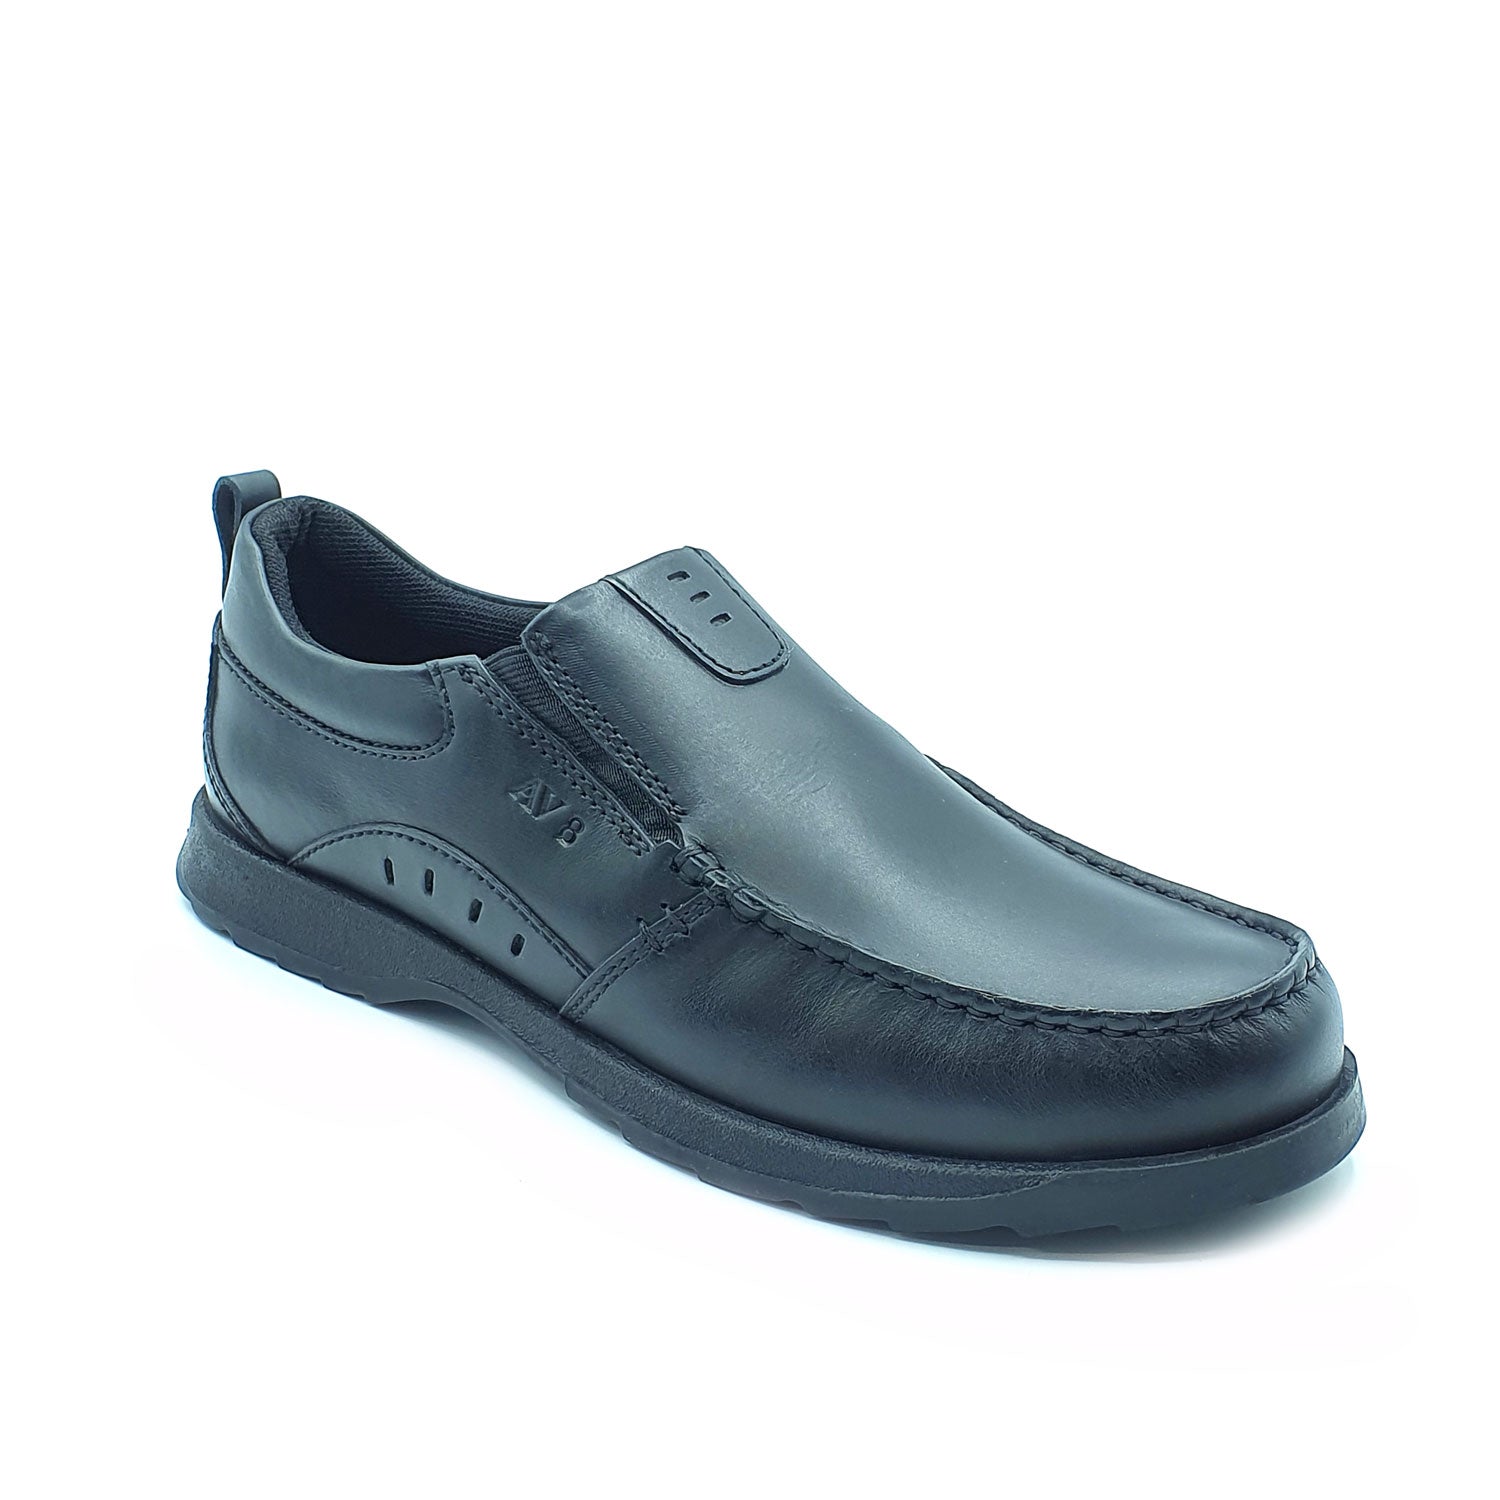 Dubarry Karter Slip On Av8 Shoe - Black 3 Shaws Department Stores